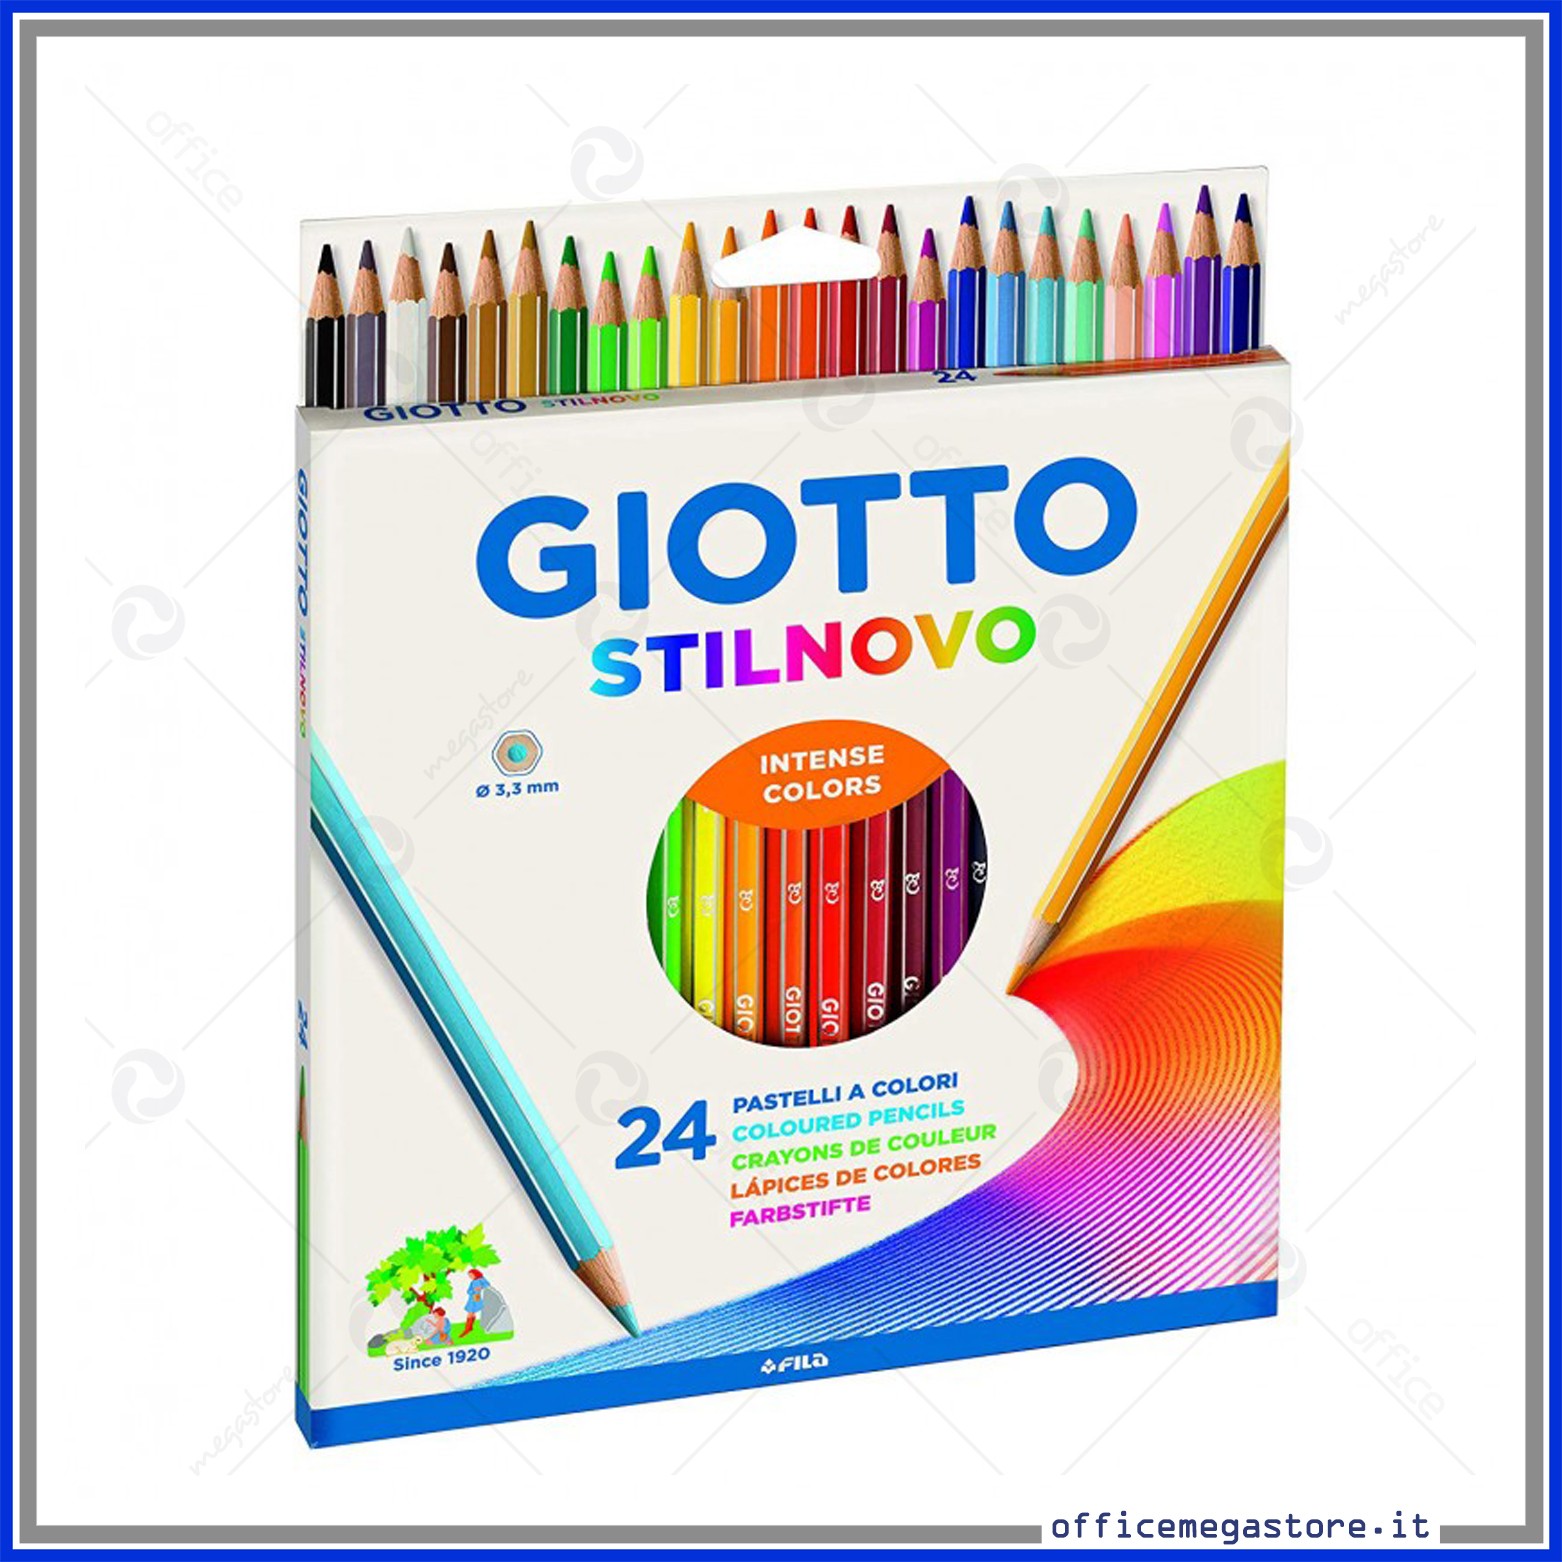 Astuccio da 24 Matite a Pastello Colorate Visita lo Store di GiottoGIOTTO Stilnovo 3.3mm Colori Intensi 